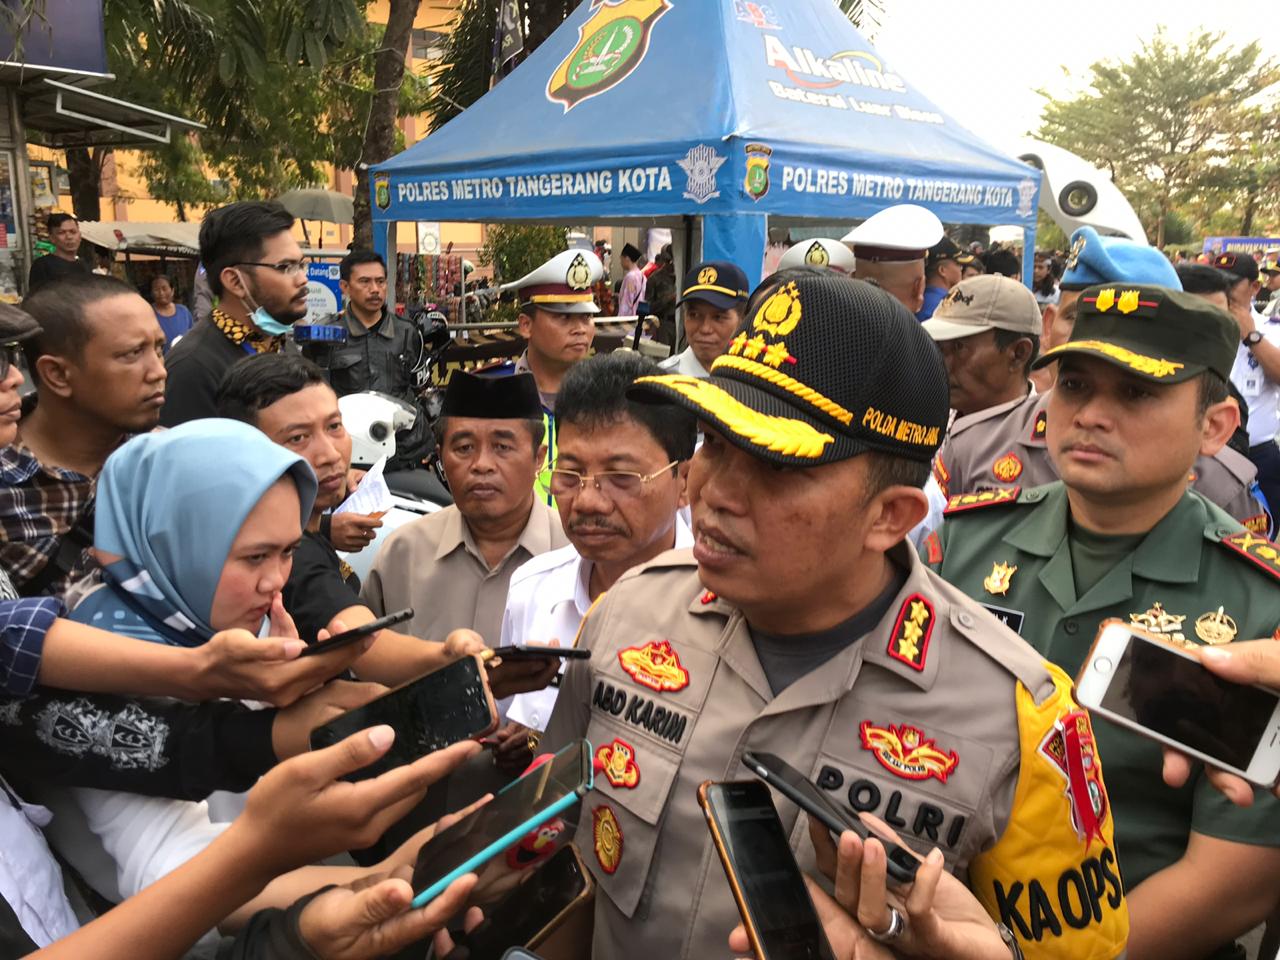 Kapolres Metro Tangerang Kota Kombes Pol. Abdul Karim memberi keterangan kepada awak media.(aul)